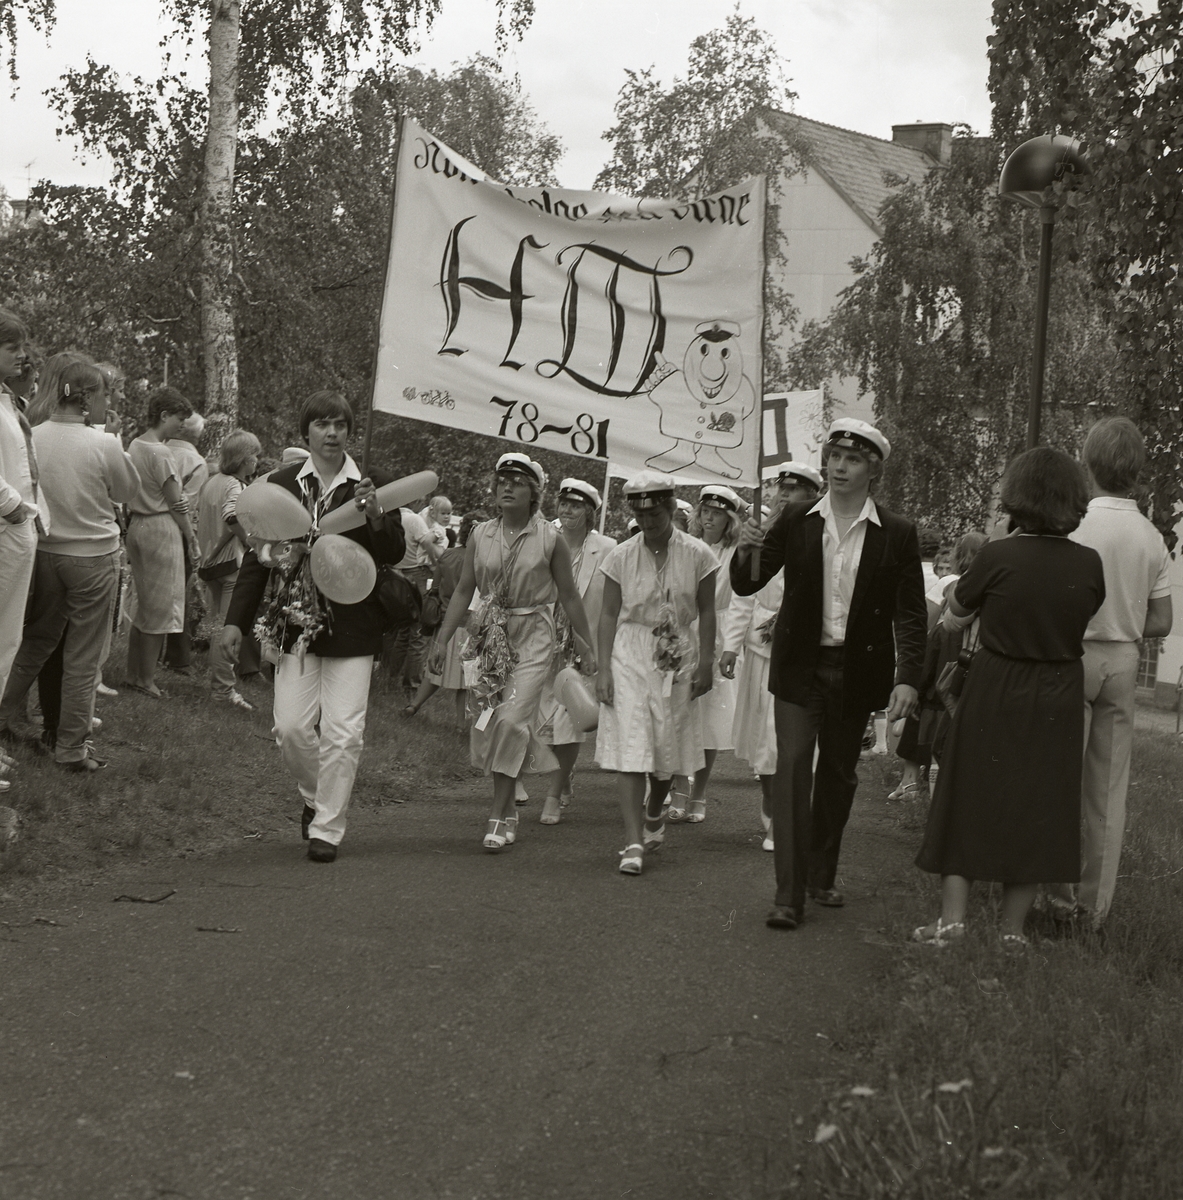 Studenter tågar bakom banderoller upp för Ohnbacken, Bollnäs den 4 juni 1981. Längs vägkanten har en publik ansamlats för att bevittna studenttåget. Alla studenter bär vita studentmössor och har runt sina halsar blommor och ballonger. På banderollerna går att läsa klassernas namn, studieperiod och i vissa fall är även en humoristisk komponent tillagd.